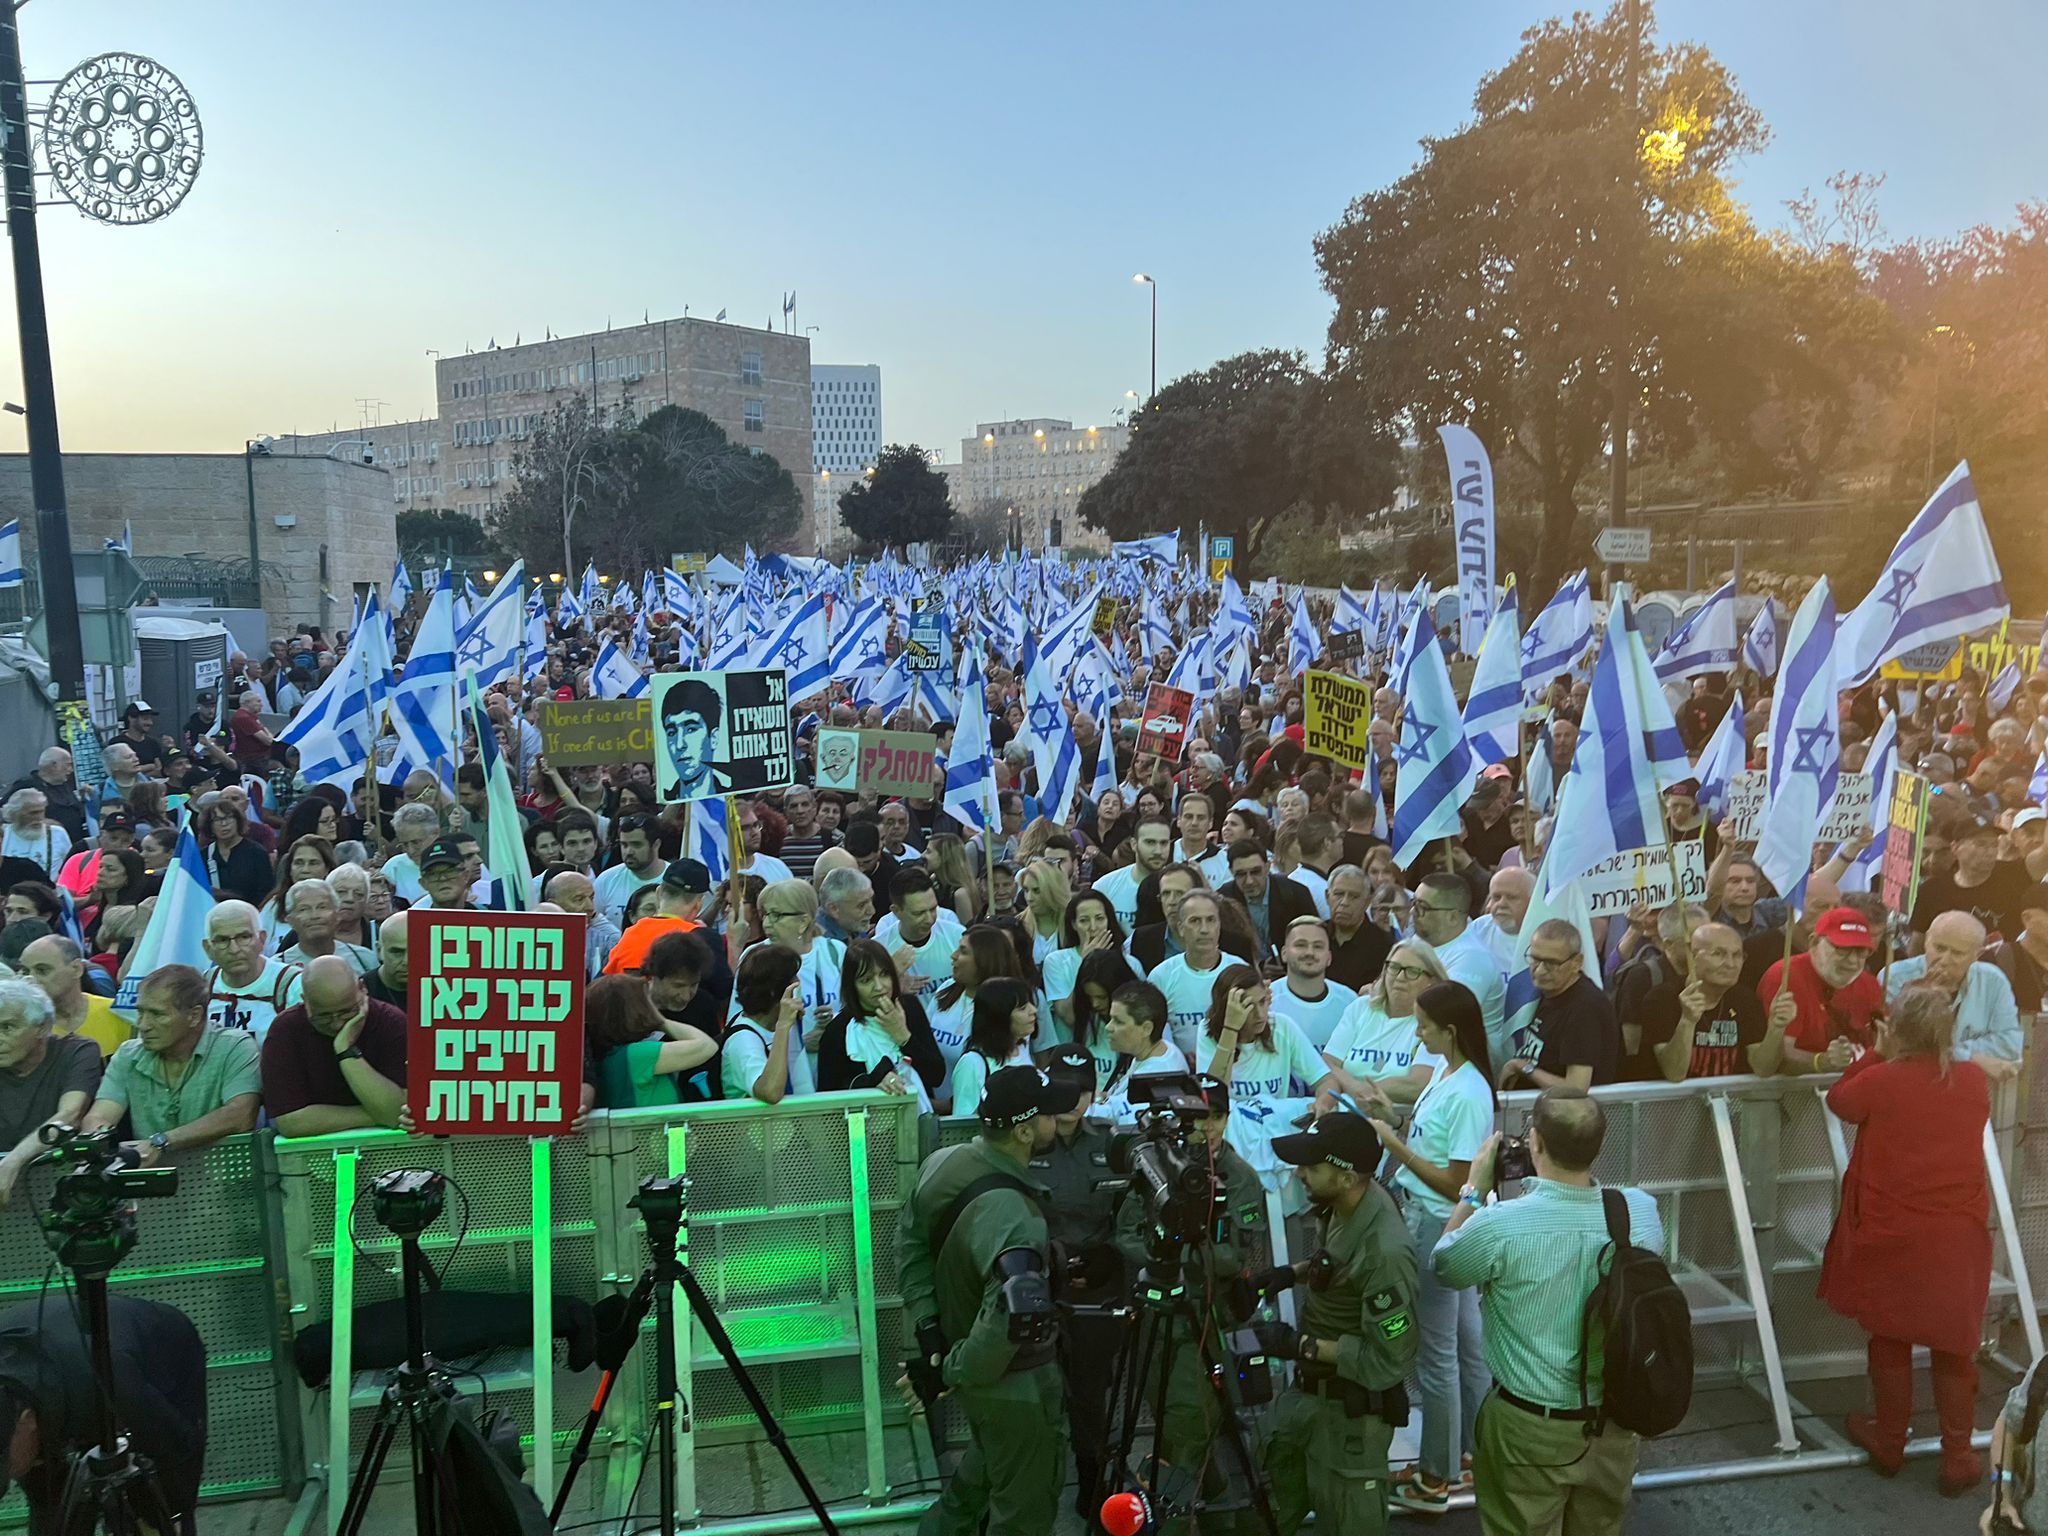 عائلات الرهائن الإسرائيليين تتظاهر وتطالب بـ"صفقة فورية" بعد إعلان حماس موت رهينتين